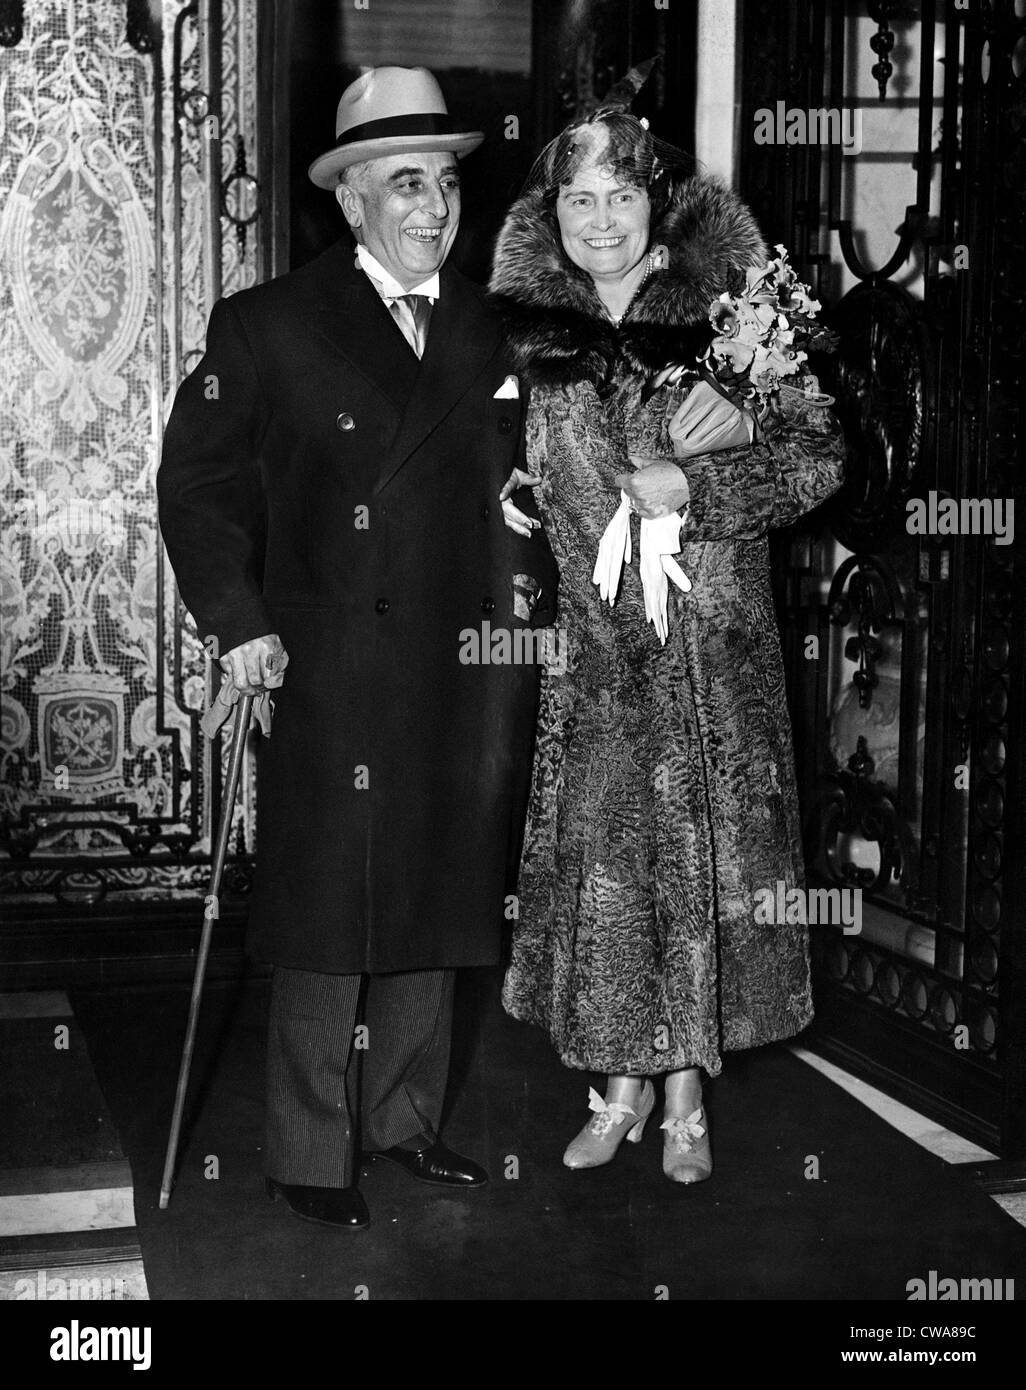 Joseph E. Davies und Marjorie Merriweather Post nach ihrer Hochzeit, 1935. Höflichkeit: CSU Archive/Everett Collection Stockfoto